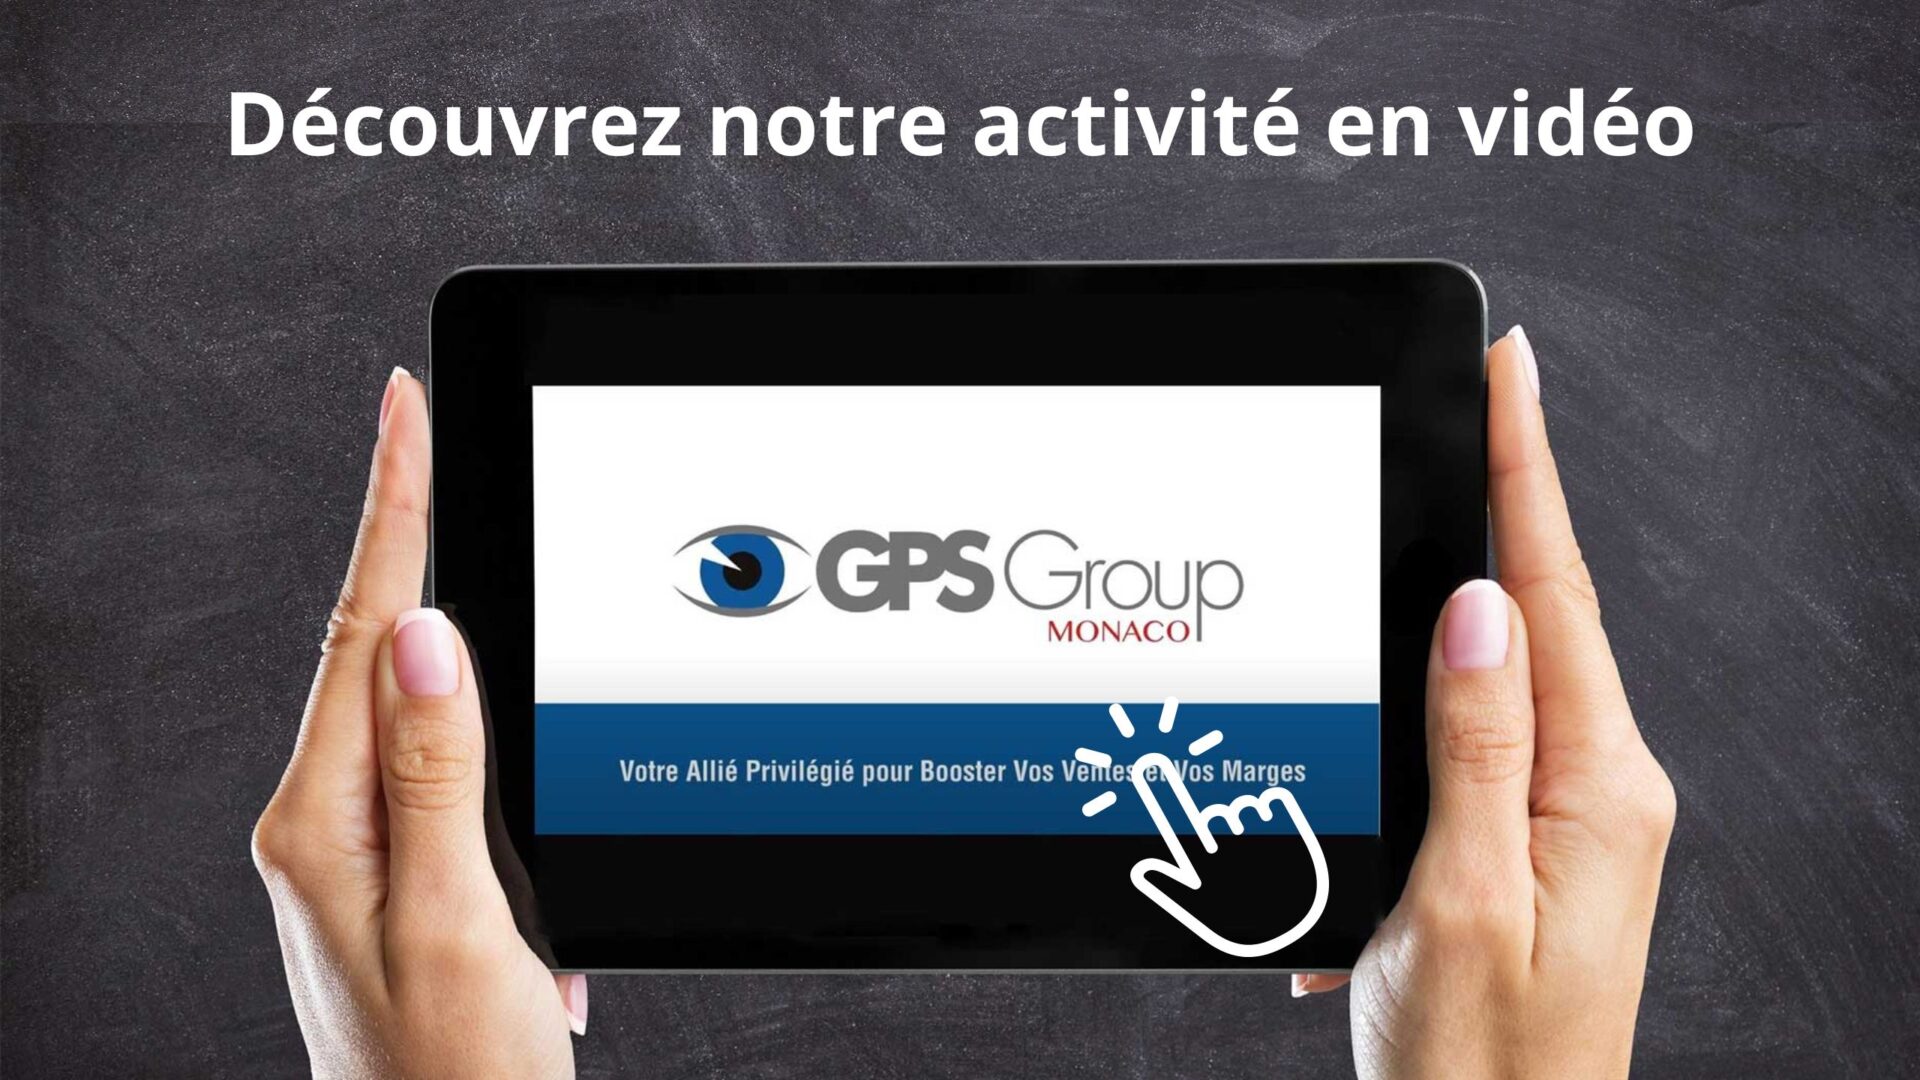 Lien vers vidéo de présentation GPS Monaco group